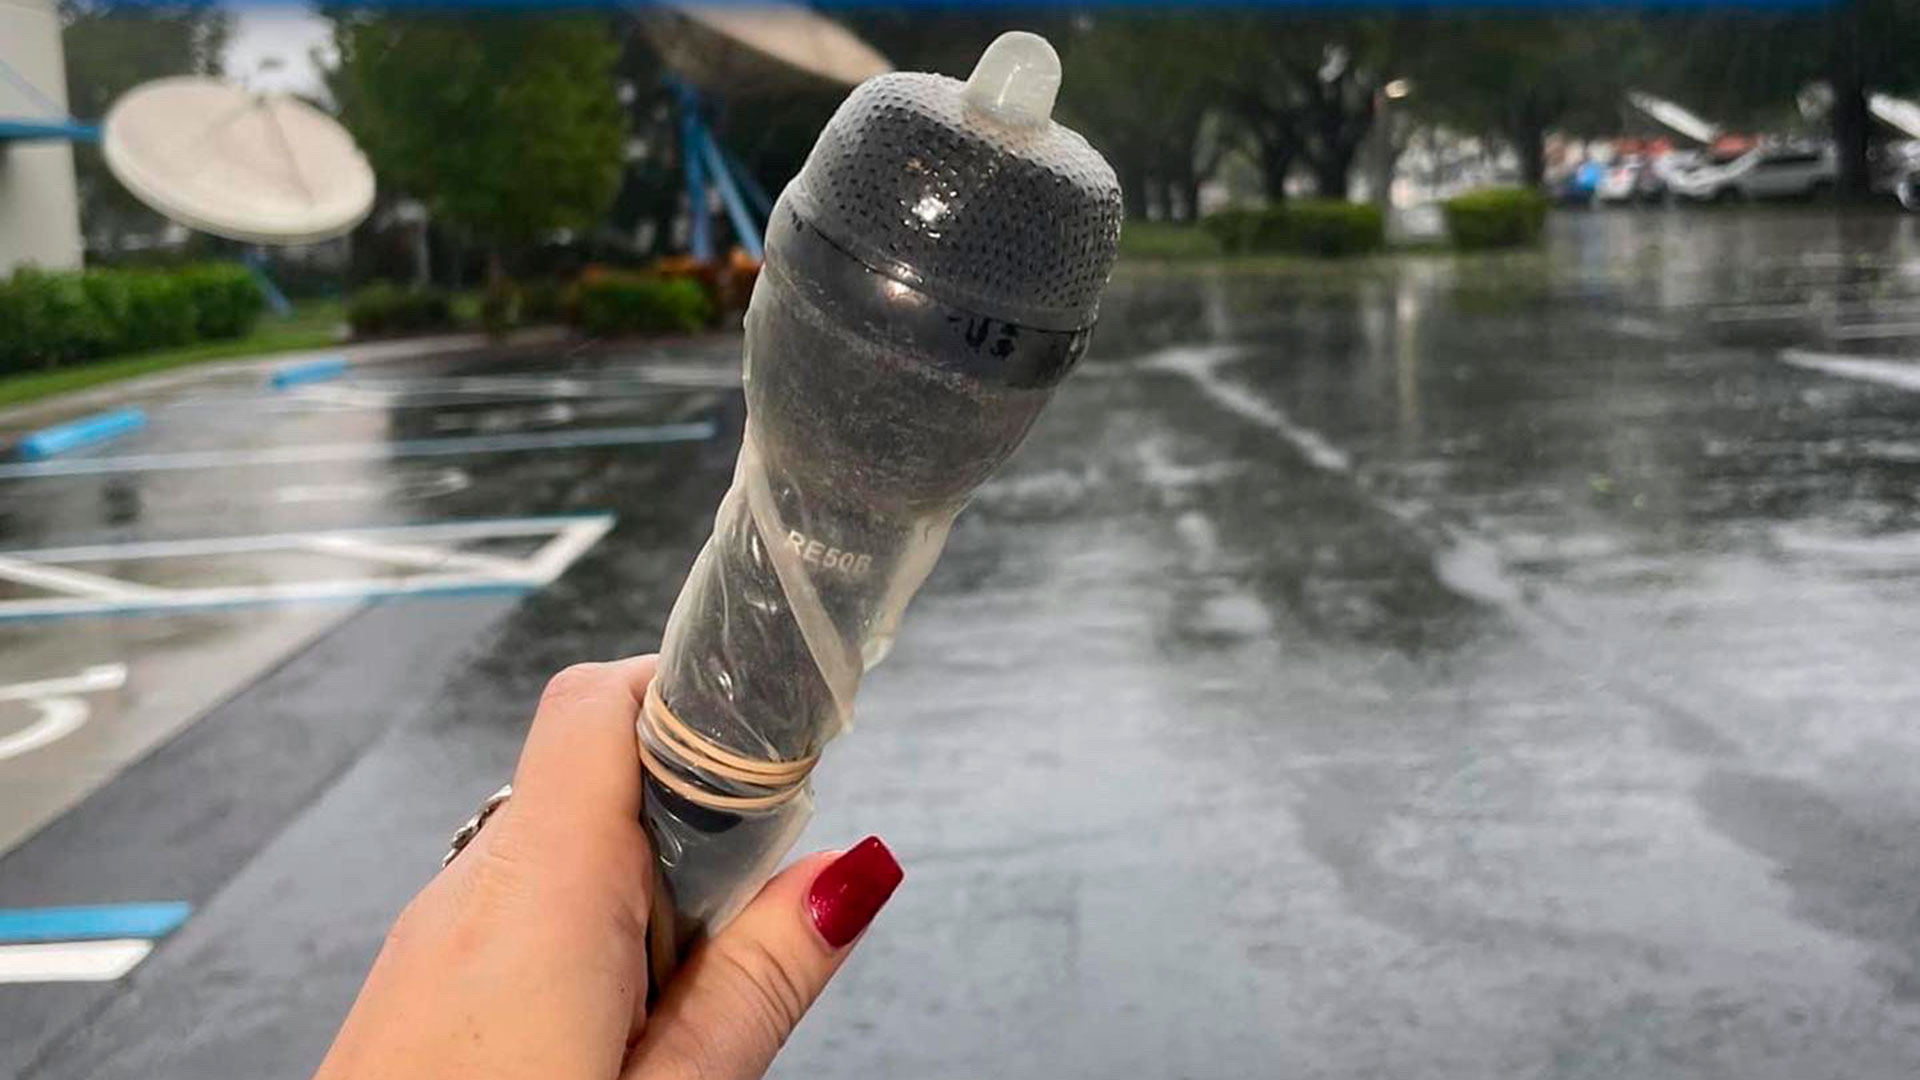 Galer mostró en redes sociales cómo cubrió su micrófono con un condón ante la llegada del huracán Ian a Florida